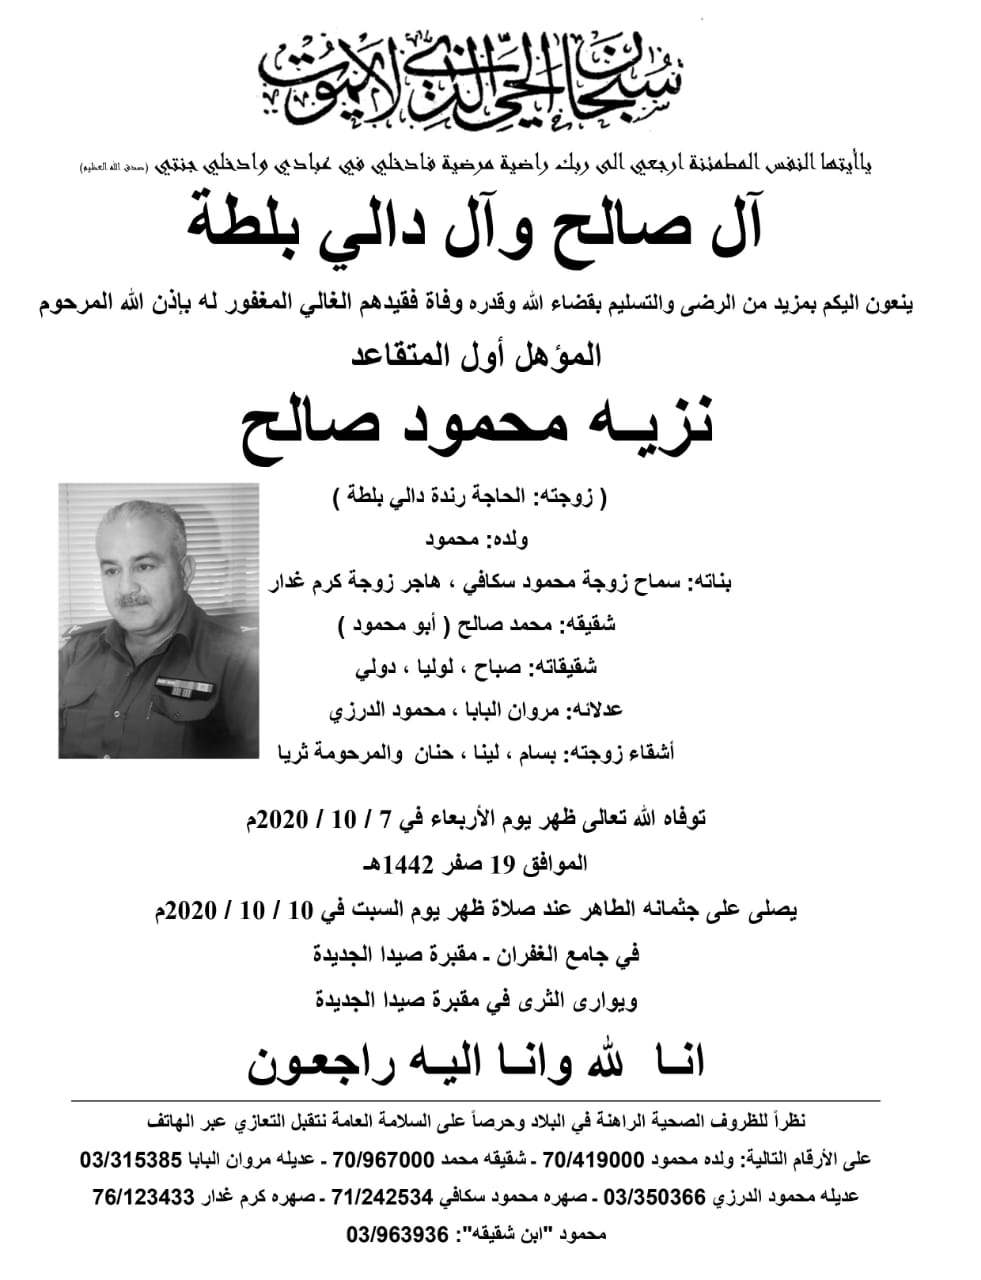 وفاة المؤهل أول المتقاعد نزيه محمود صالح الدفن ظهر يوم السبت 10 تشرين أول 2020